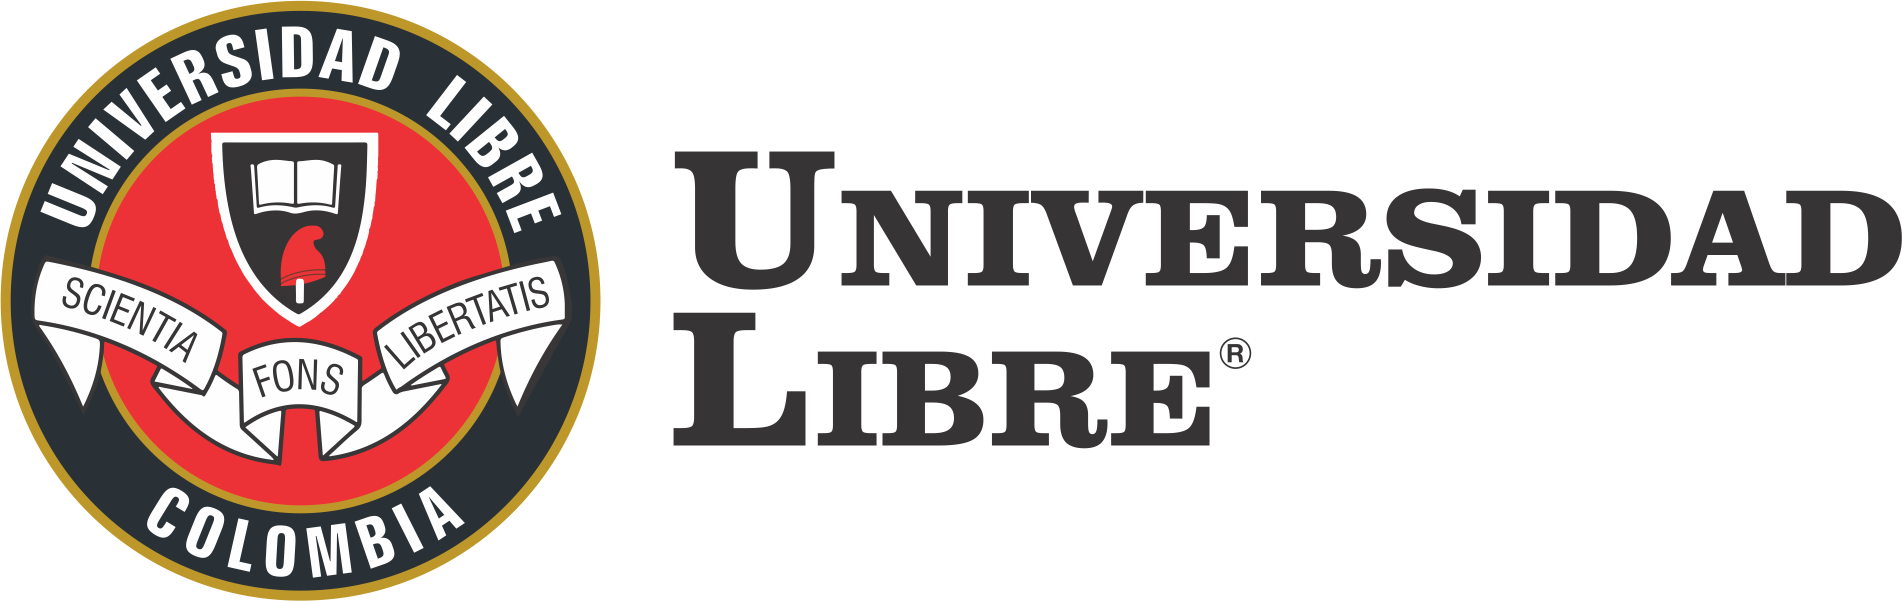 Universidad libre de Colombia